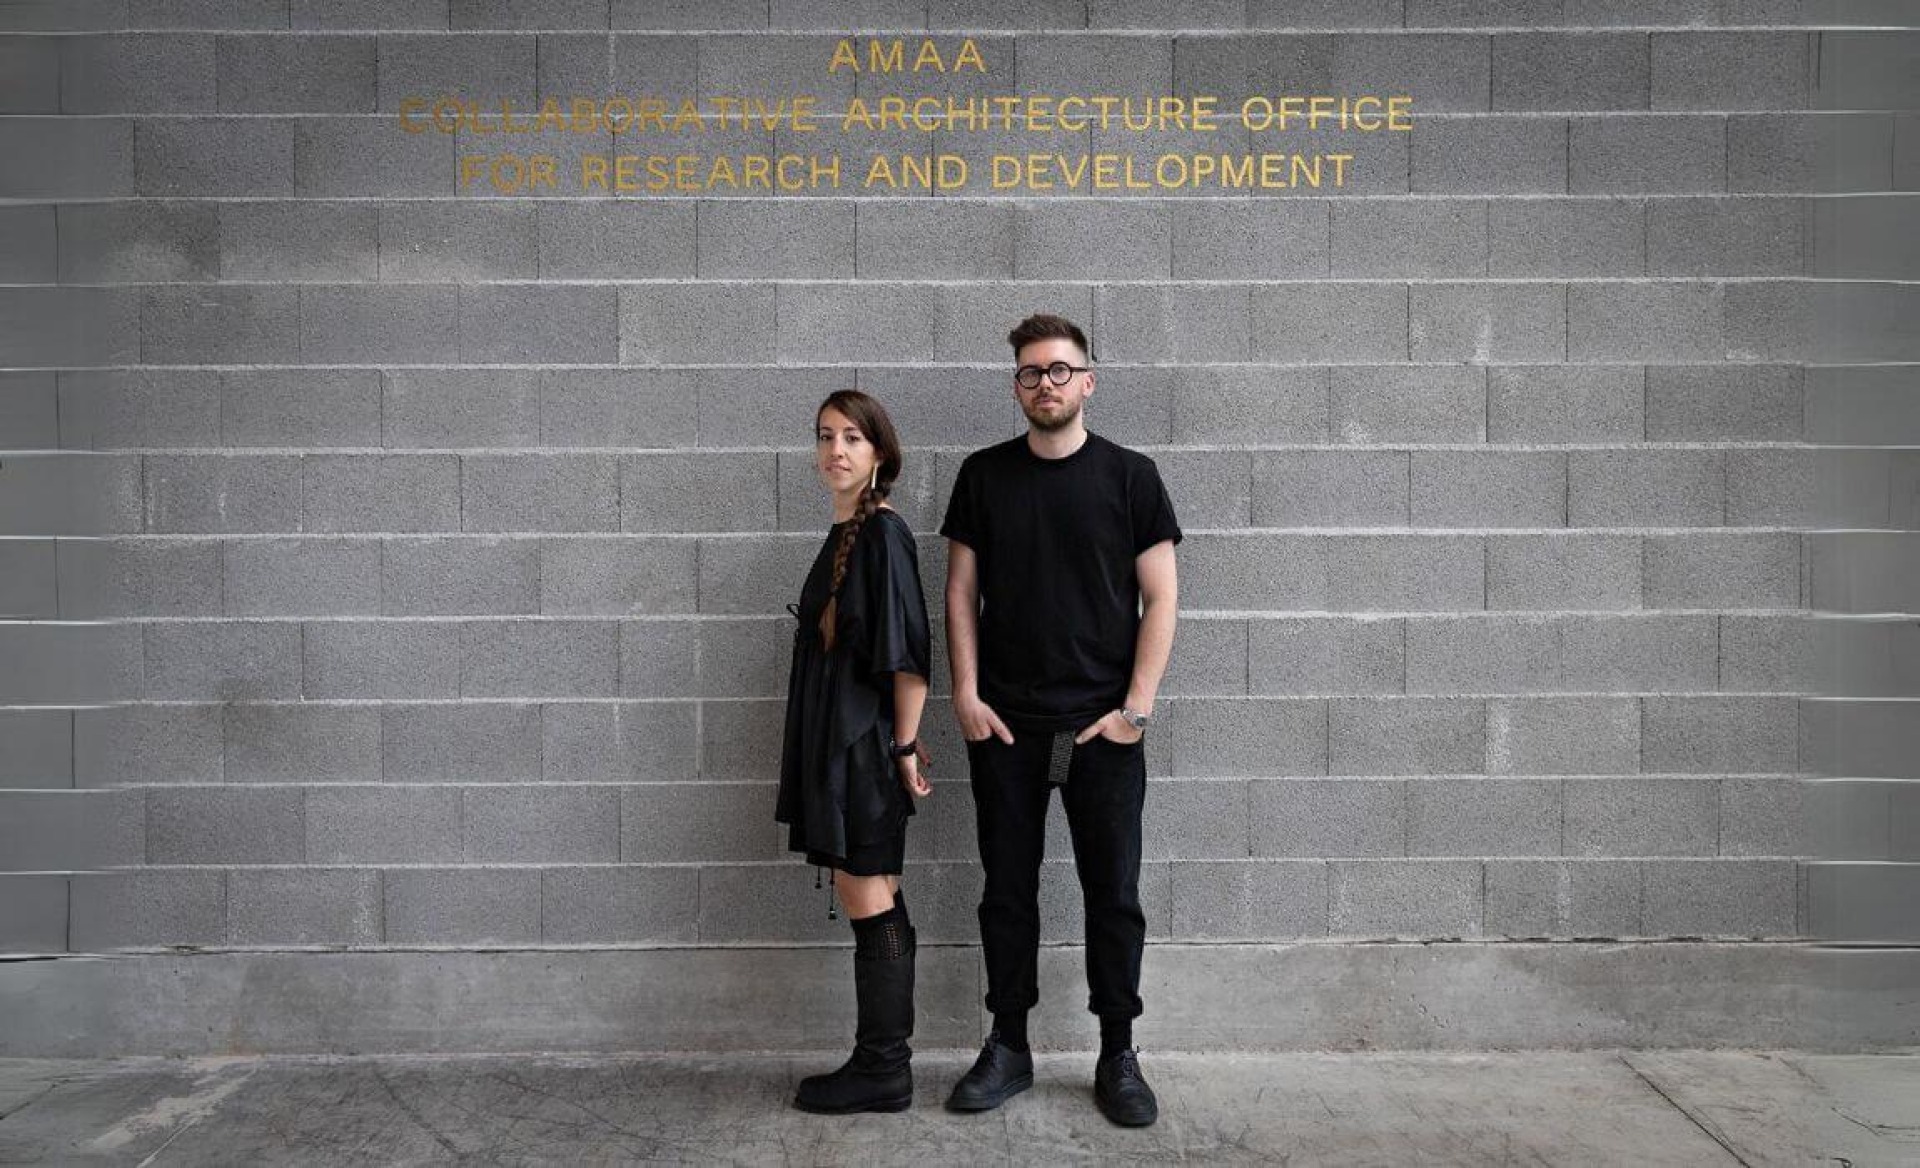 amaa-collaborative-architecture-office-formazione-per-architetti-biella-mailab-formazione